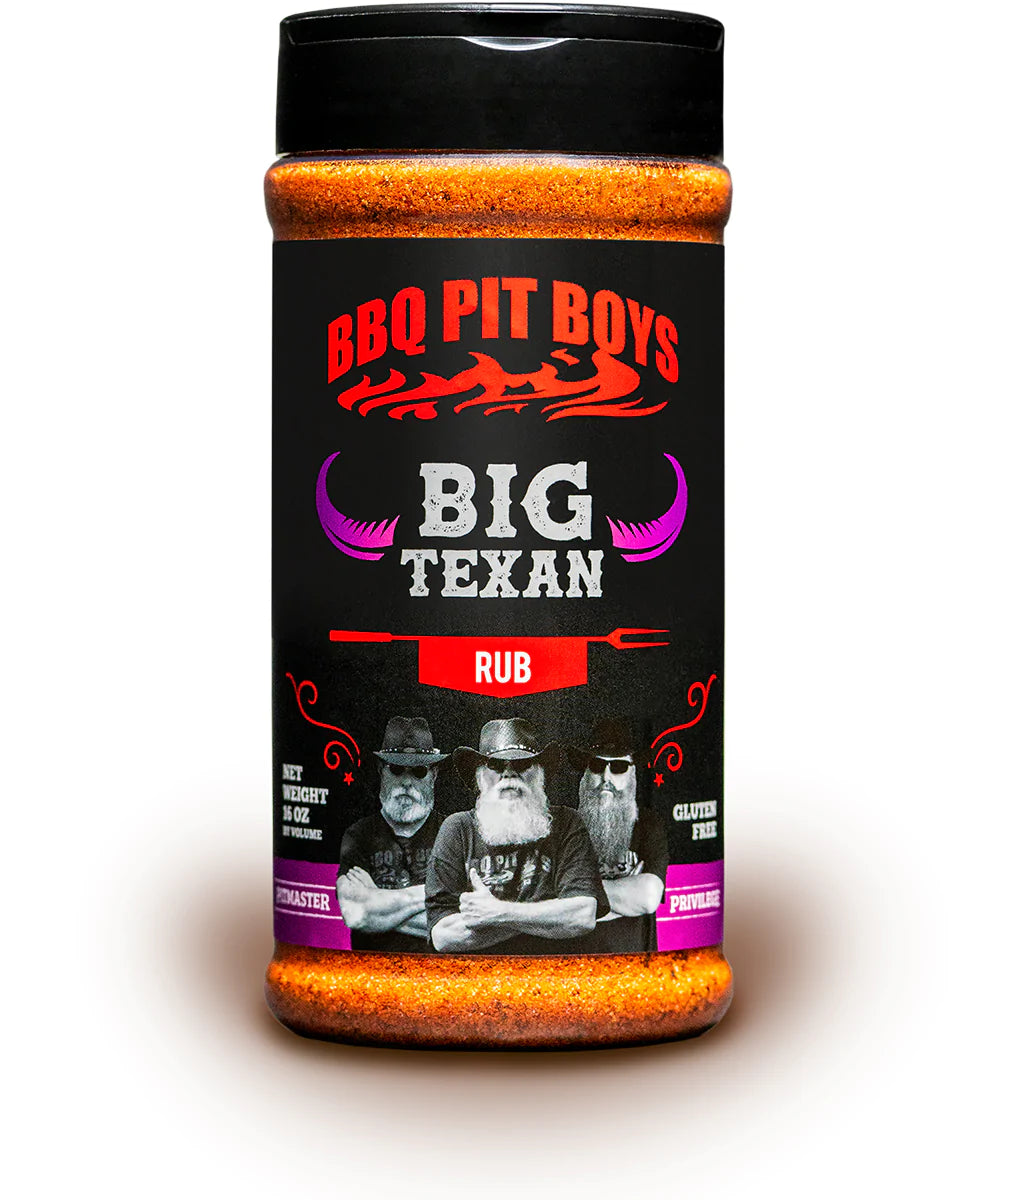 BBQ Pit Boys "Big Texan"